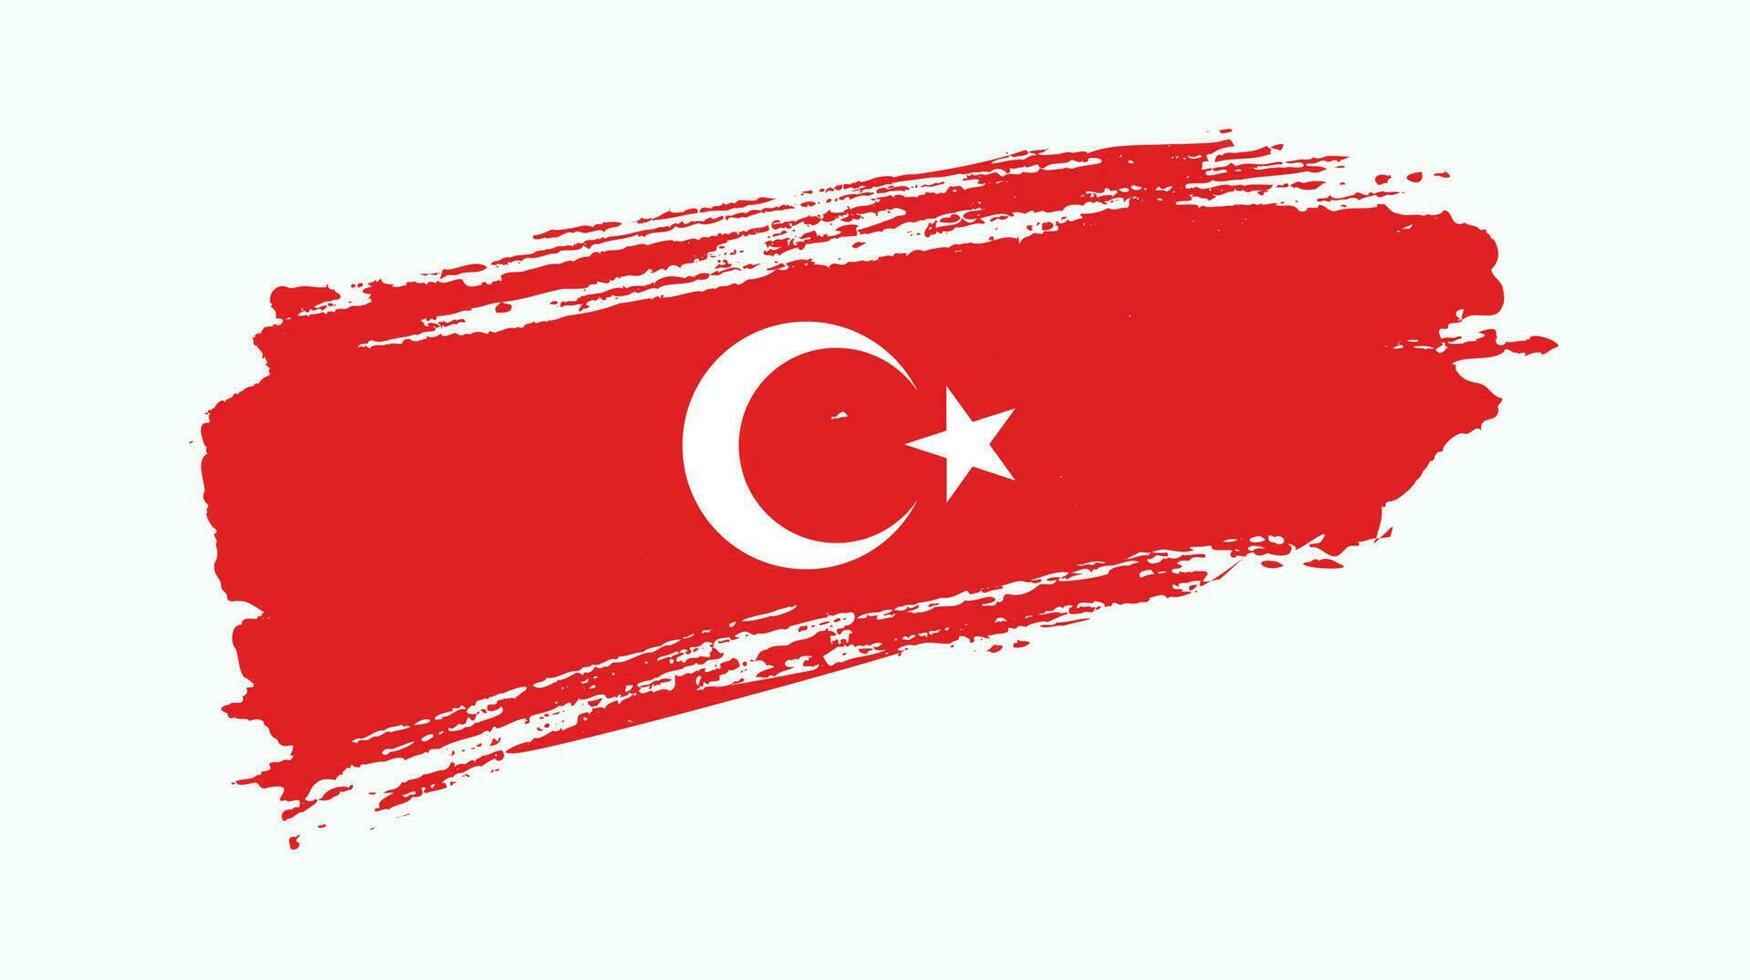 Türkei-Flaggendesign mit Grunge-Effekt vektor